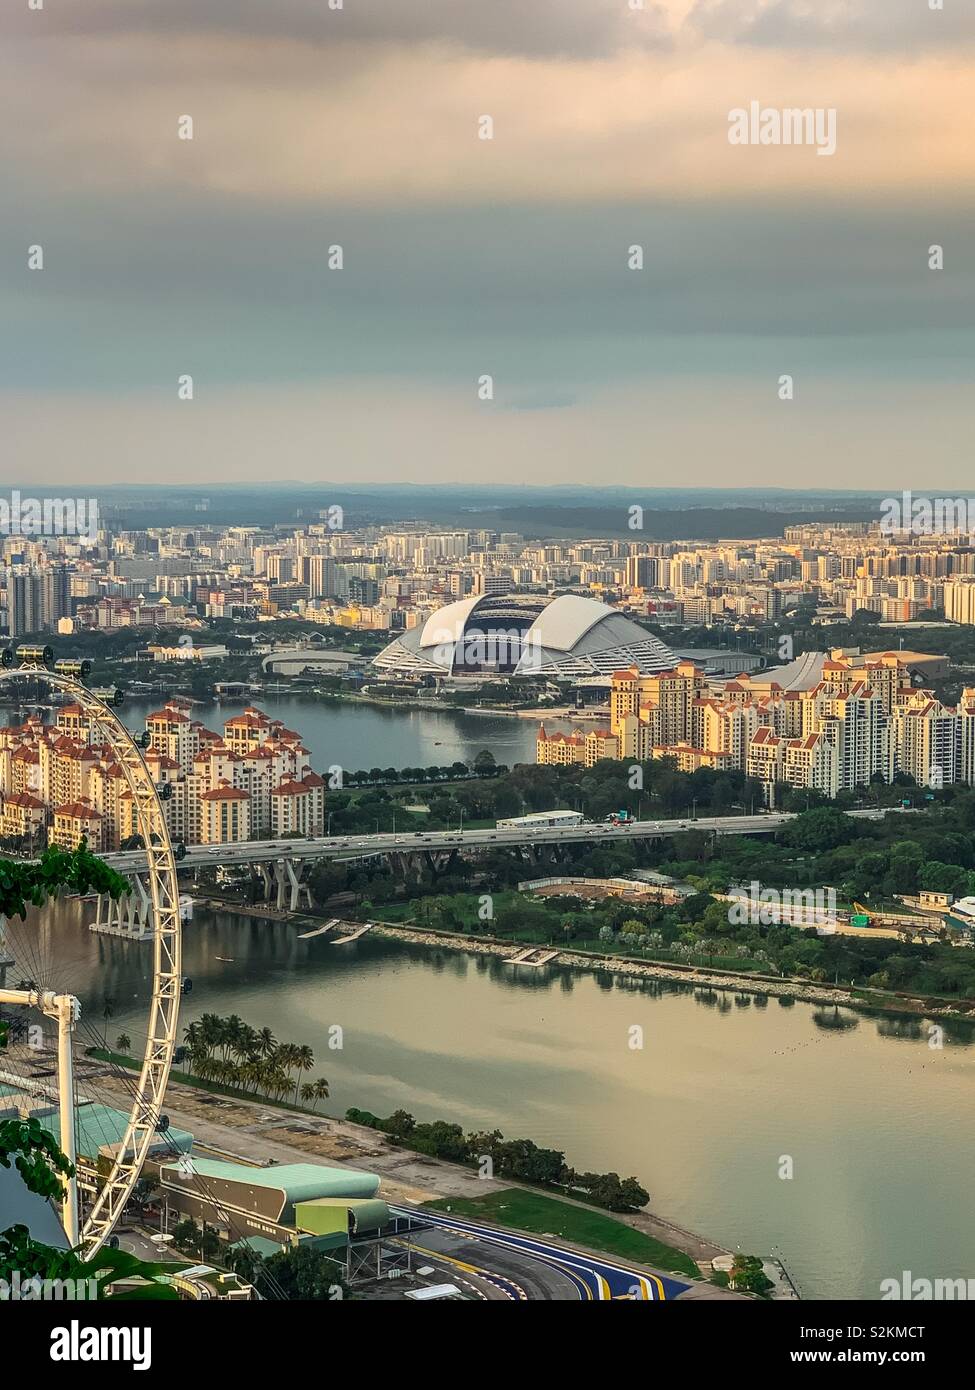 Singapore National Stadium circondato da edifici commerciali e residenziali e fiumi. Vista parziale del Singapore Flyer sulla destra. Foto Stock